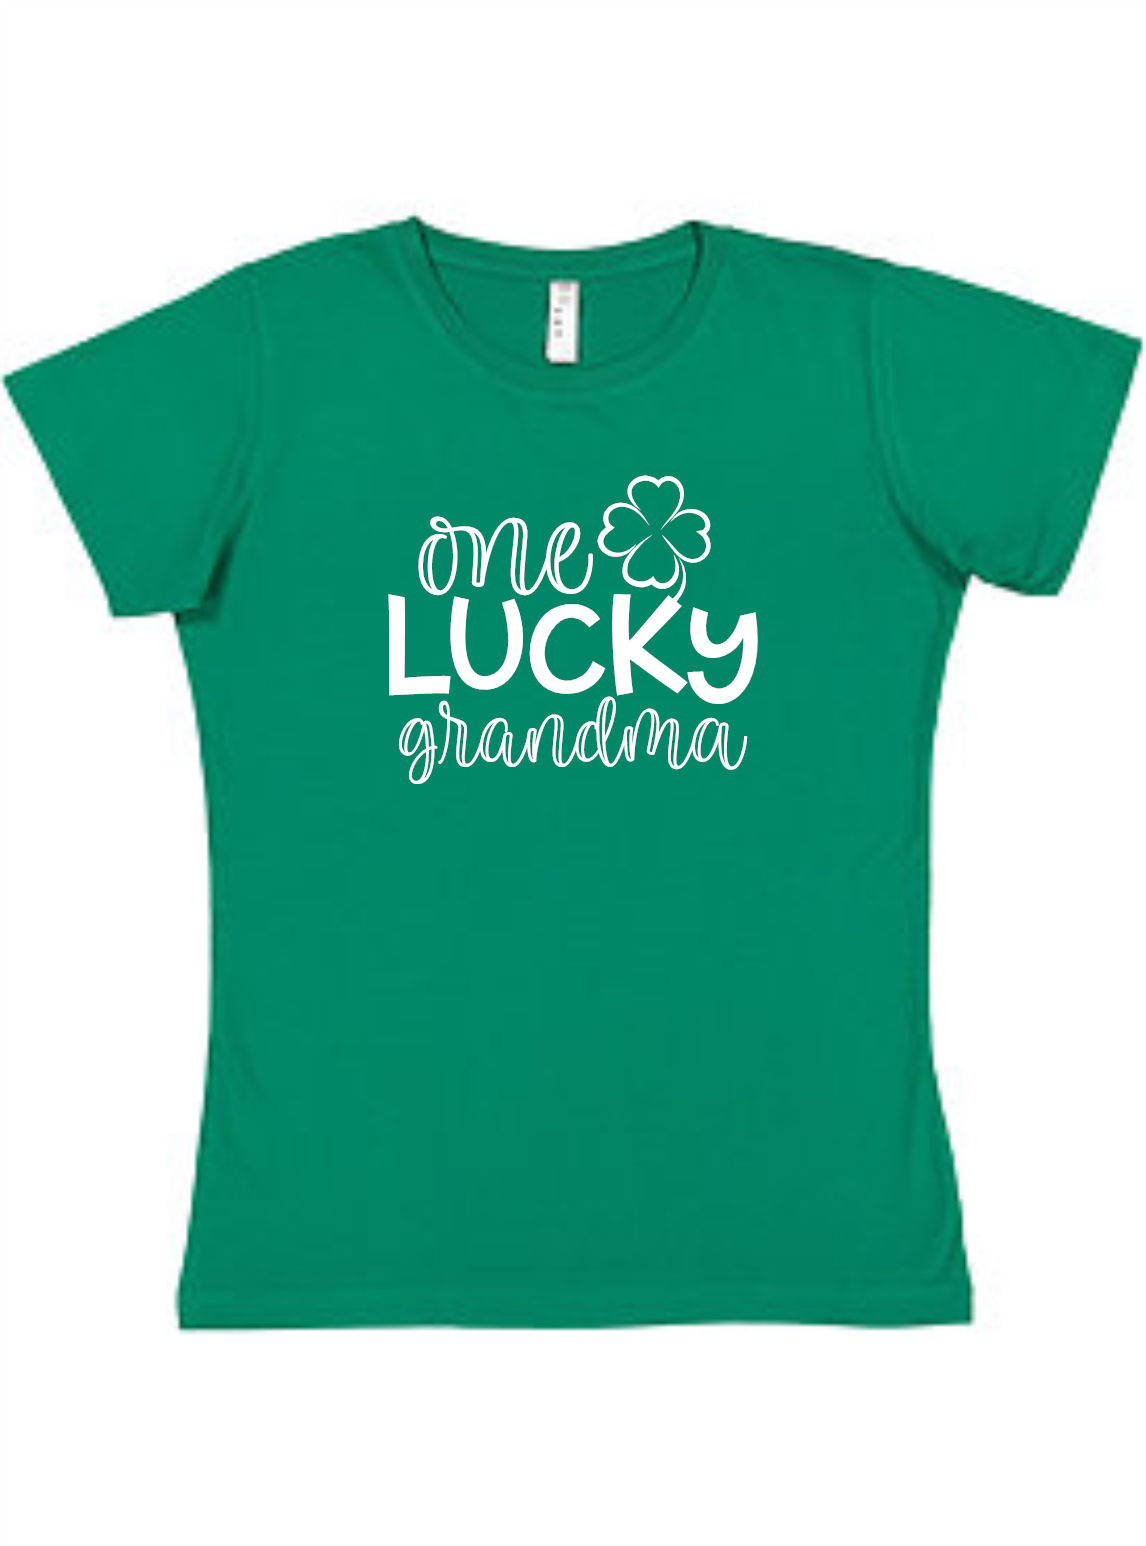 One Lucky Grandma Ladies Tee Akron Pride Custom Tees